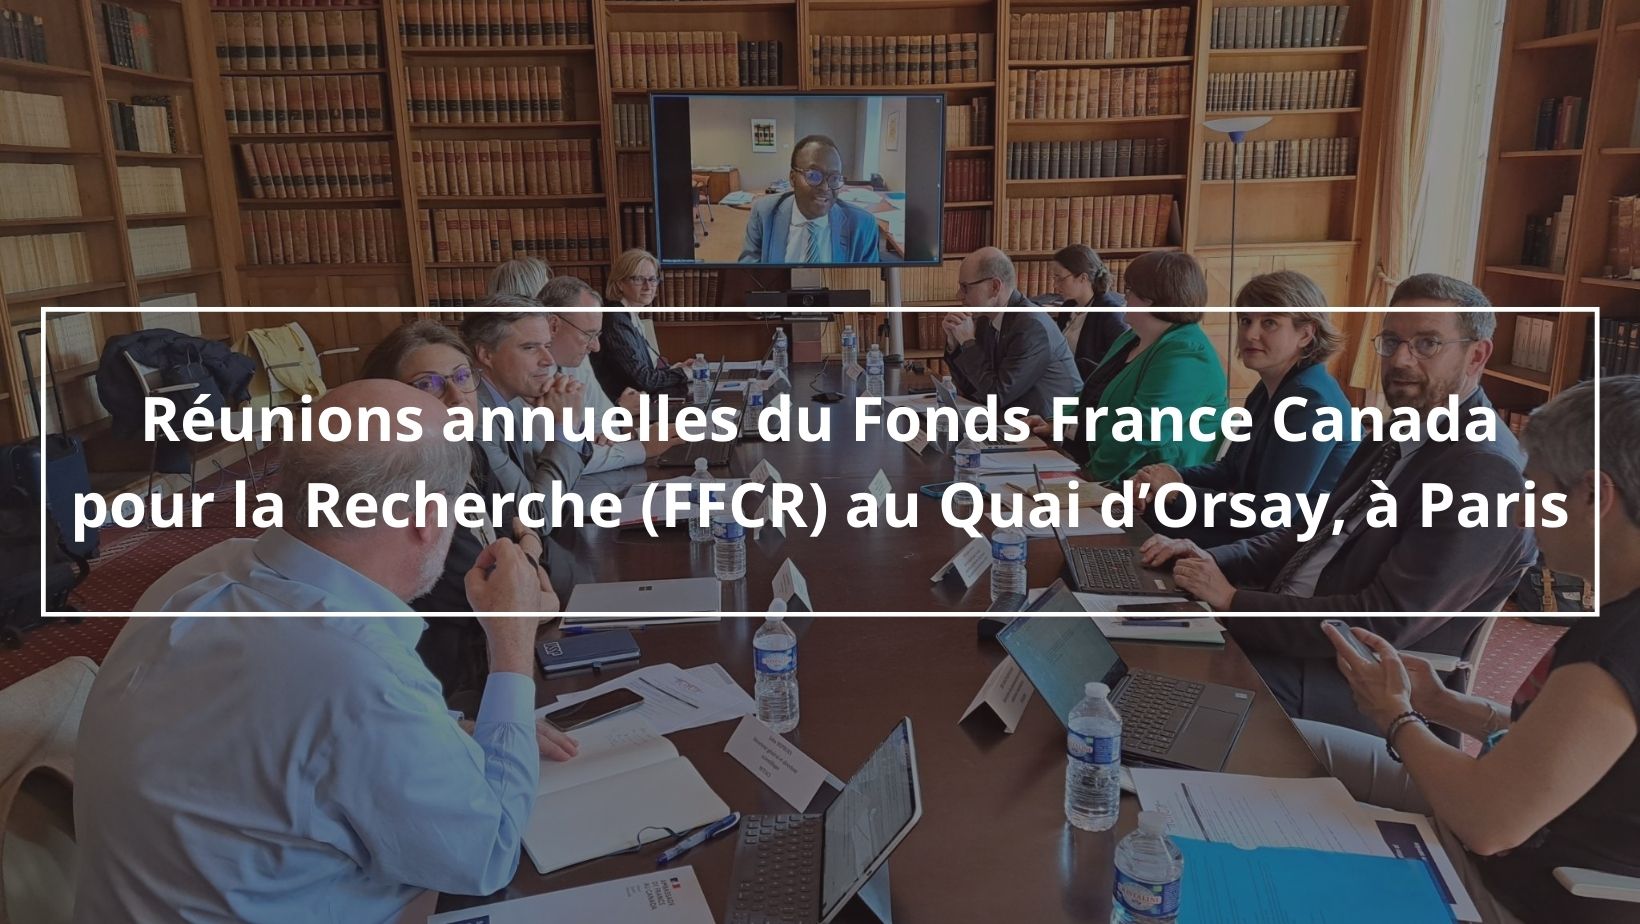 Les réunions annuelles du Fonds France Canada pour la Recherche (FFCR) se sont tenues cette année au Quai d’Orsay à Paris.